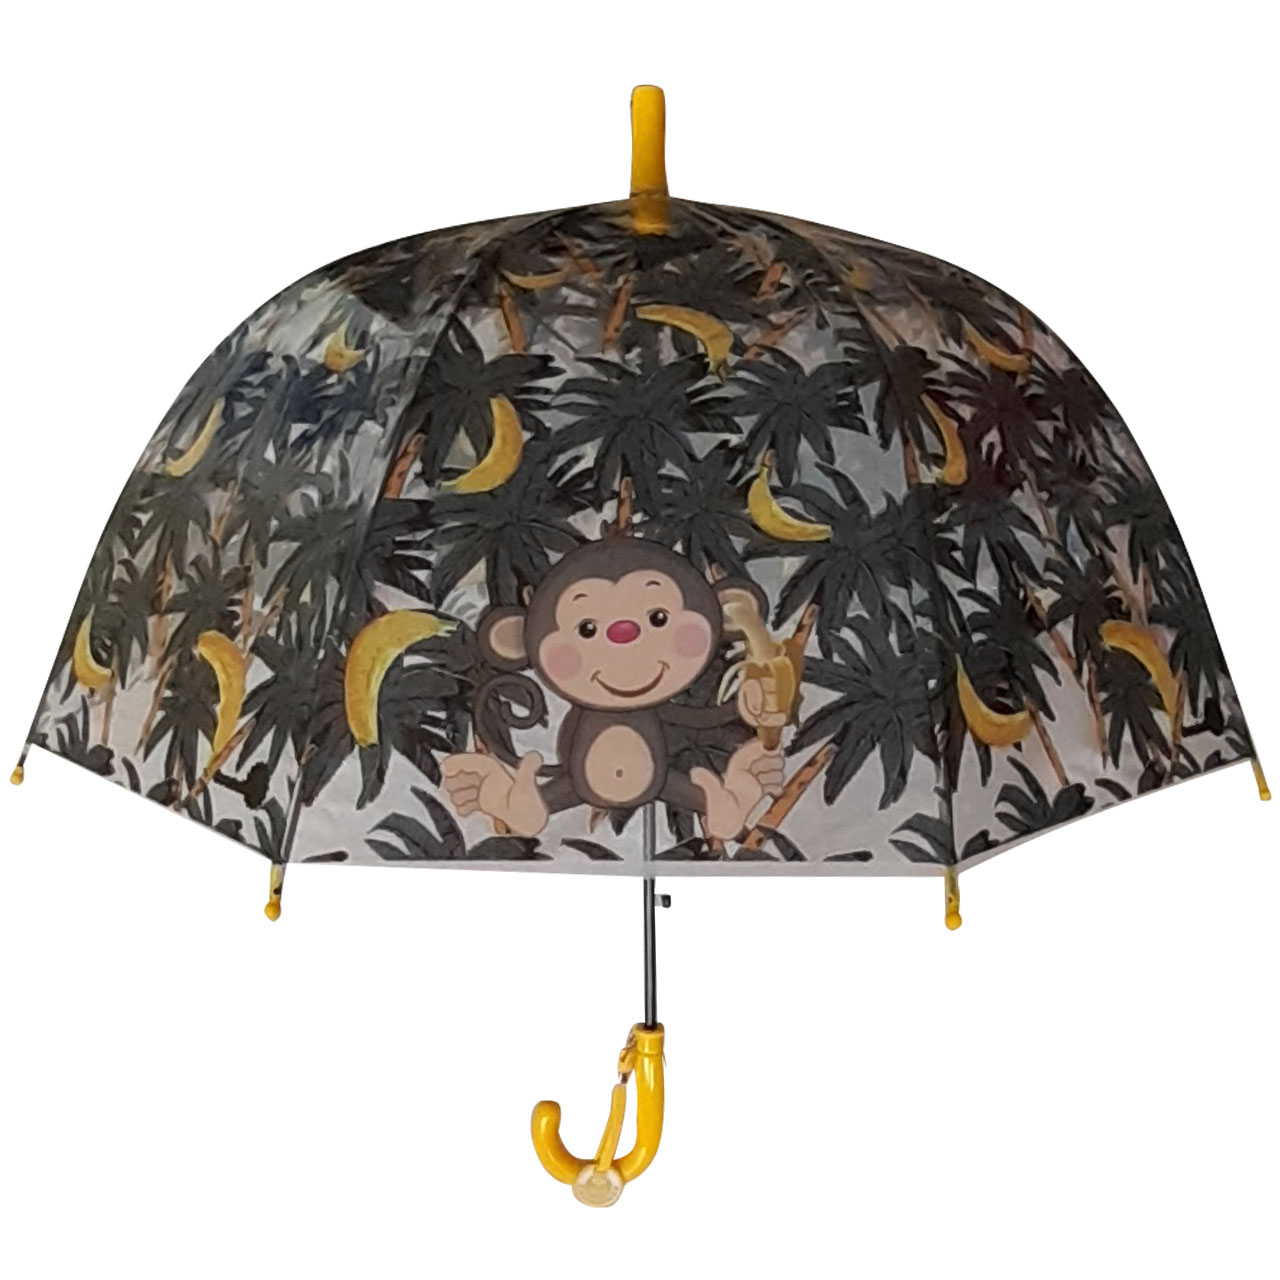  چتر بچگانه کد 201